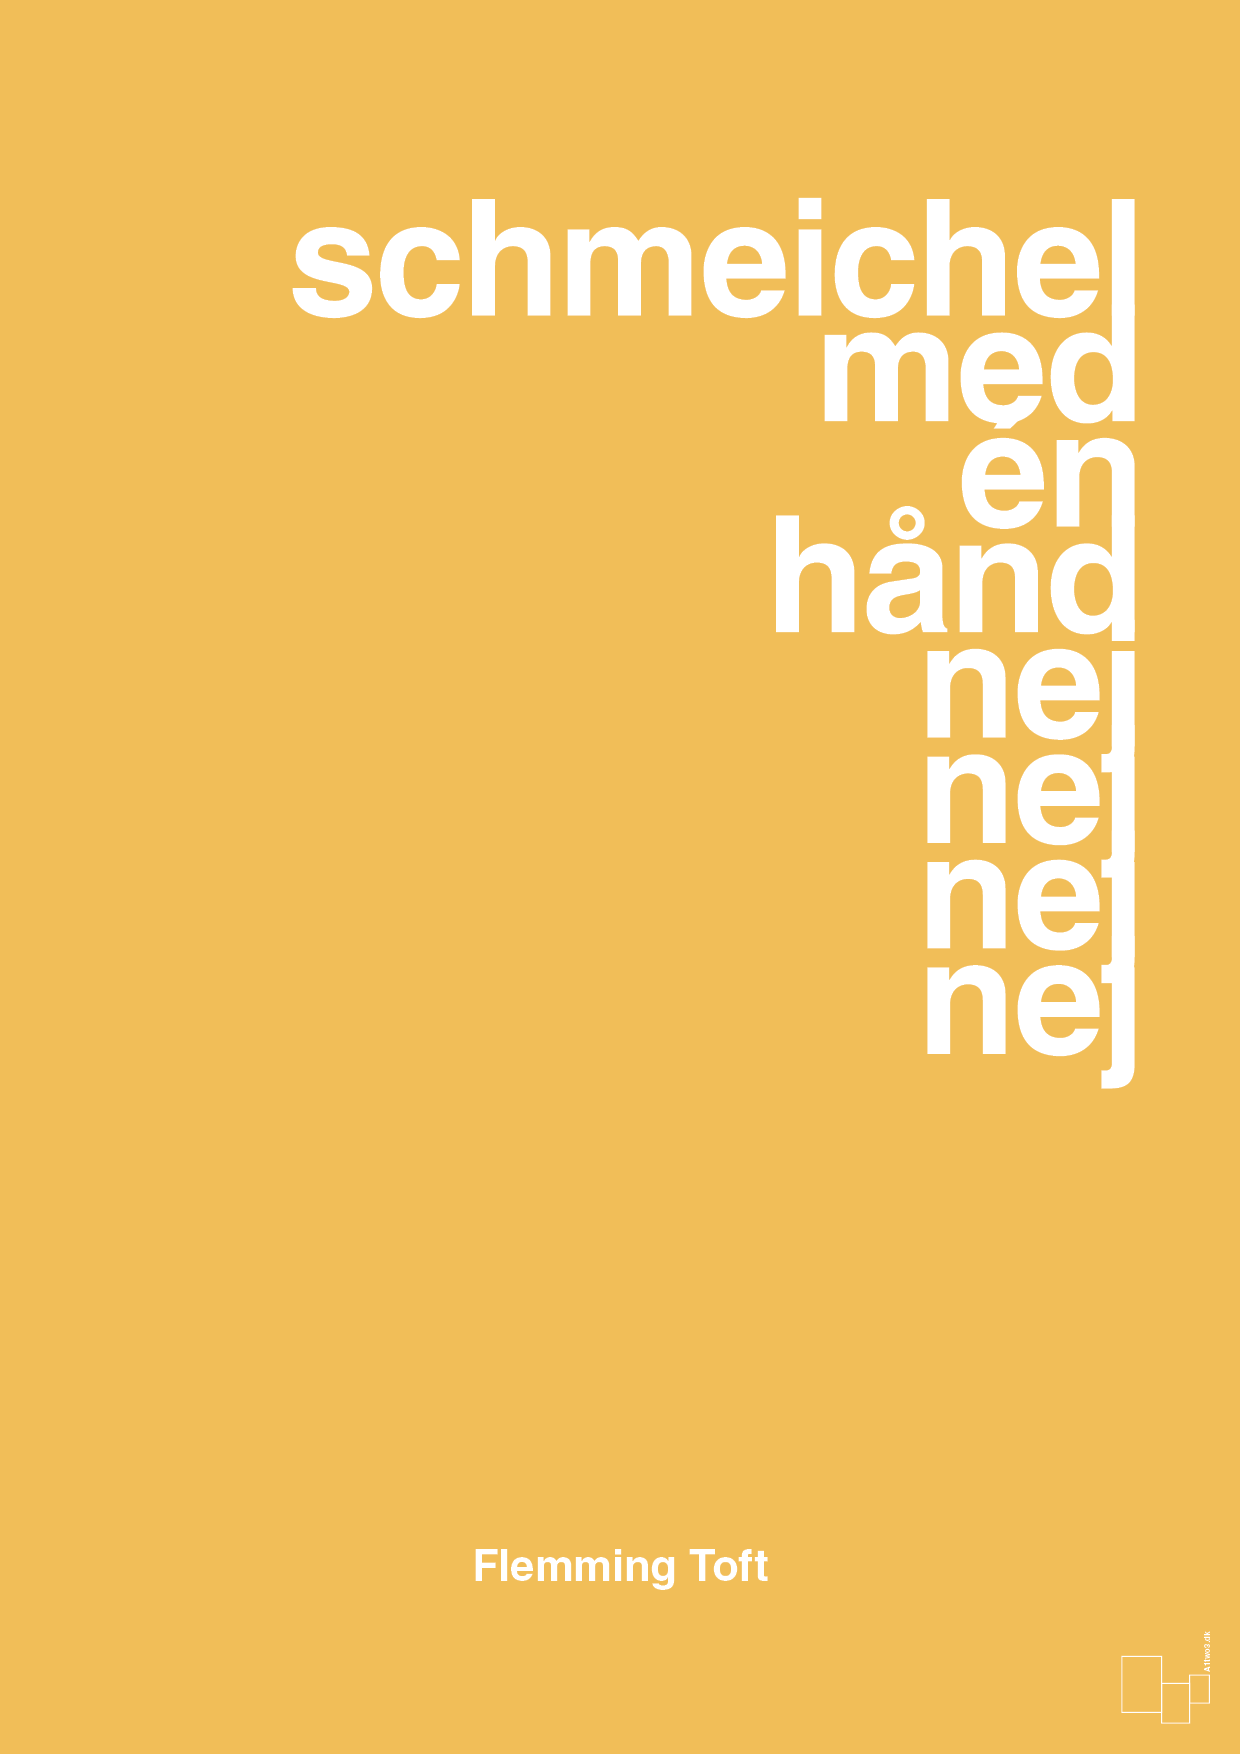 schmeichel med én hånd nej nej nej nej - Plakat med Citater i Honeycomb